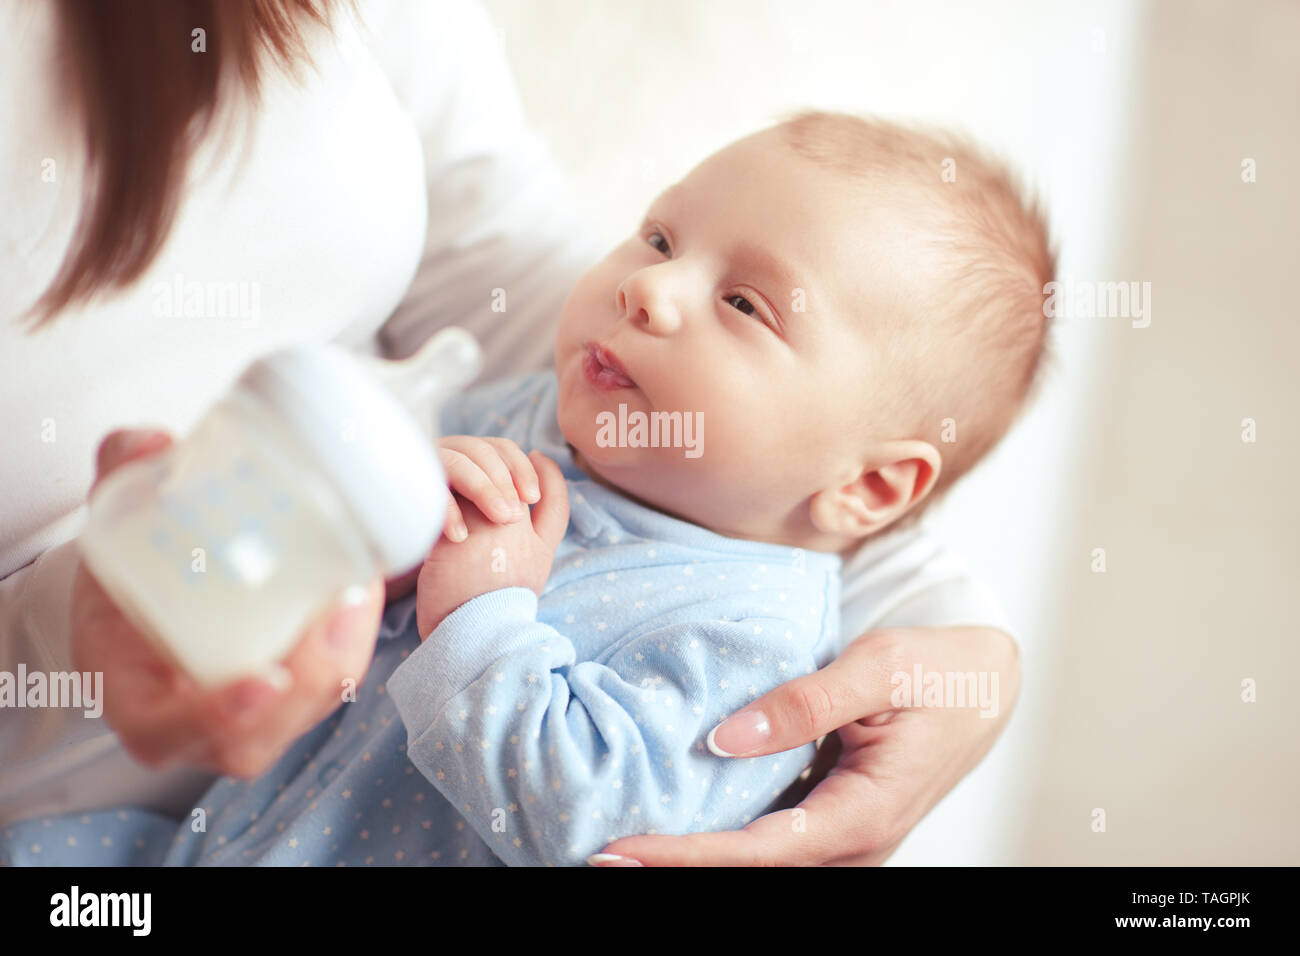 Mutter feeding baby boy 2-3 Monate alt mit Milch in der Flasche Nahaufnahme. Die Mutterschaft. Mutterschaft. Stockfoto